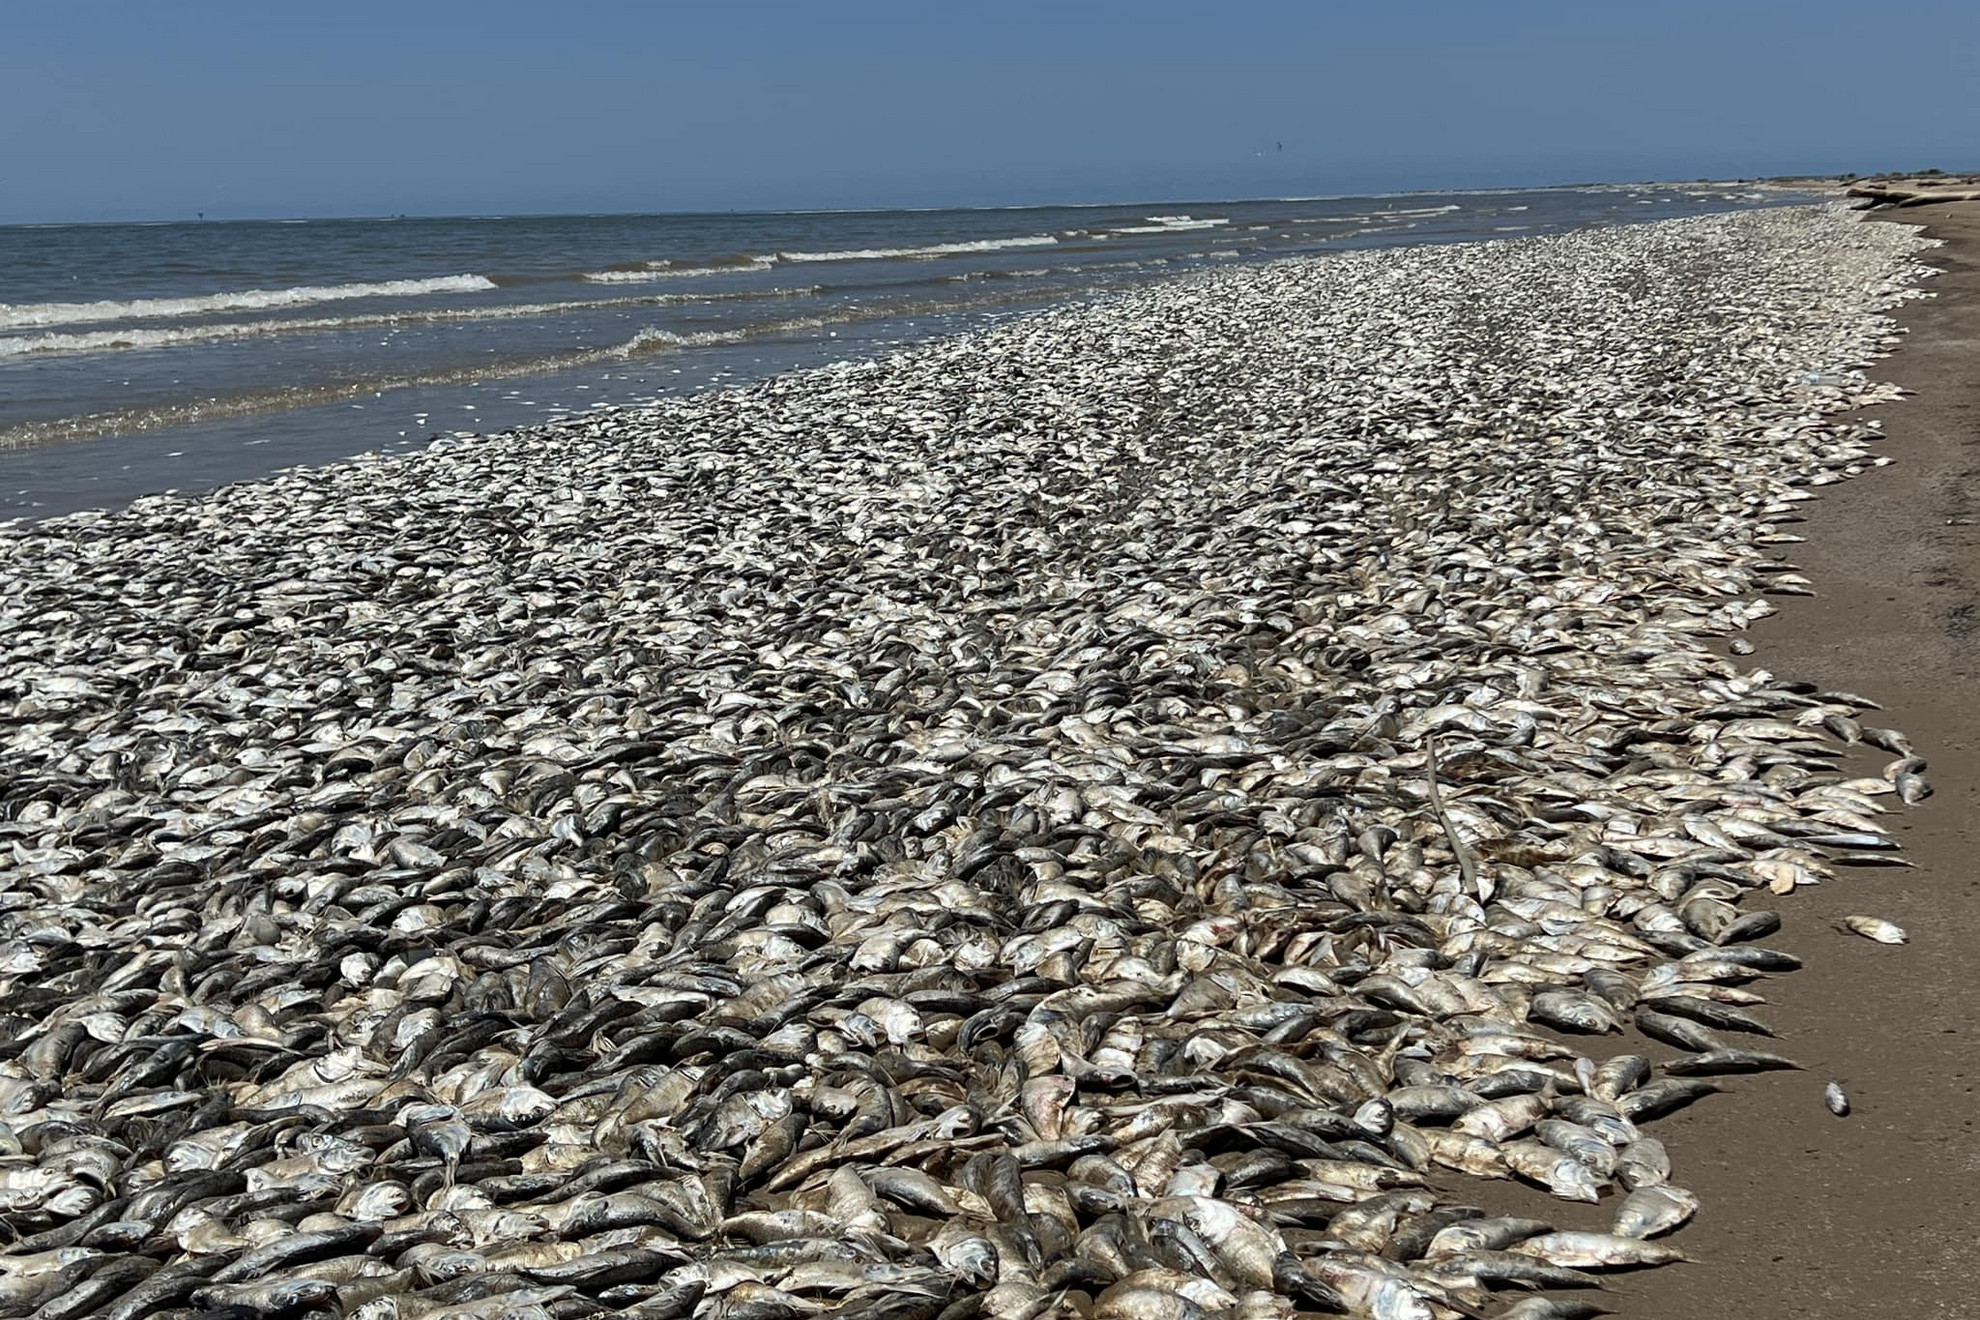 Elpusztult halak ezreit mosta partra a víz a Texasi-öböl partvidékén az Egyesült Államokban 2023. június 11-én. Texas Brazoria és Quintana megyéjének tisztviselői szerint várhatóan még több ezer halat fog holtan partra mosni a víz. A hatóságok vizsgálják, hogy a halak pusztulásának oka a tengerszennyezés vagy az óceánvíz felmelegedése miatt a part menti vizek alacsony oxigénszintje.